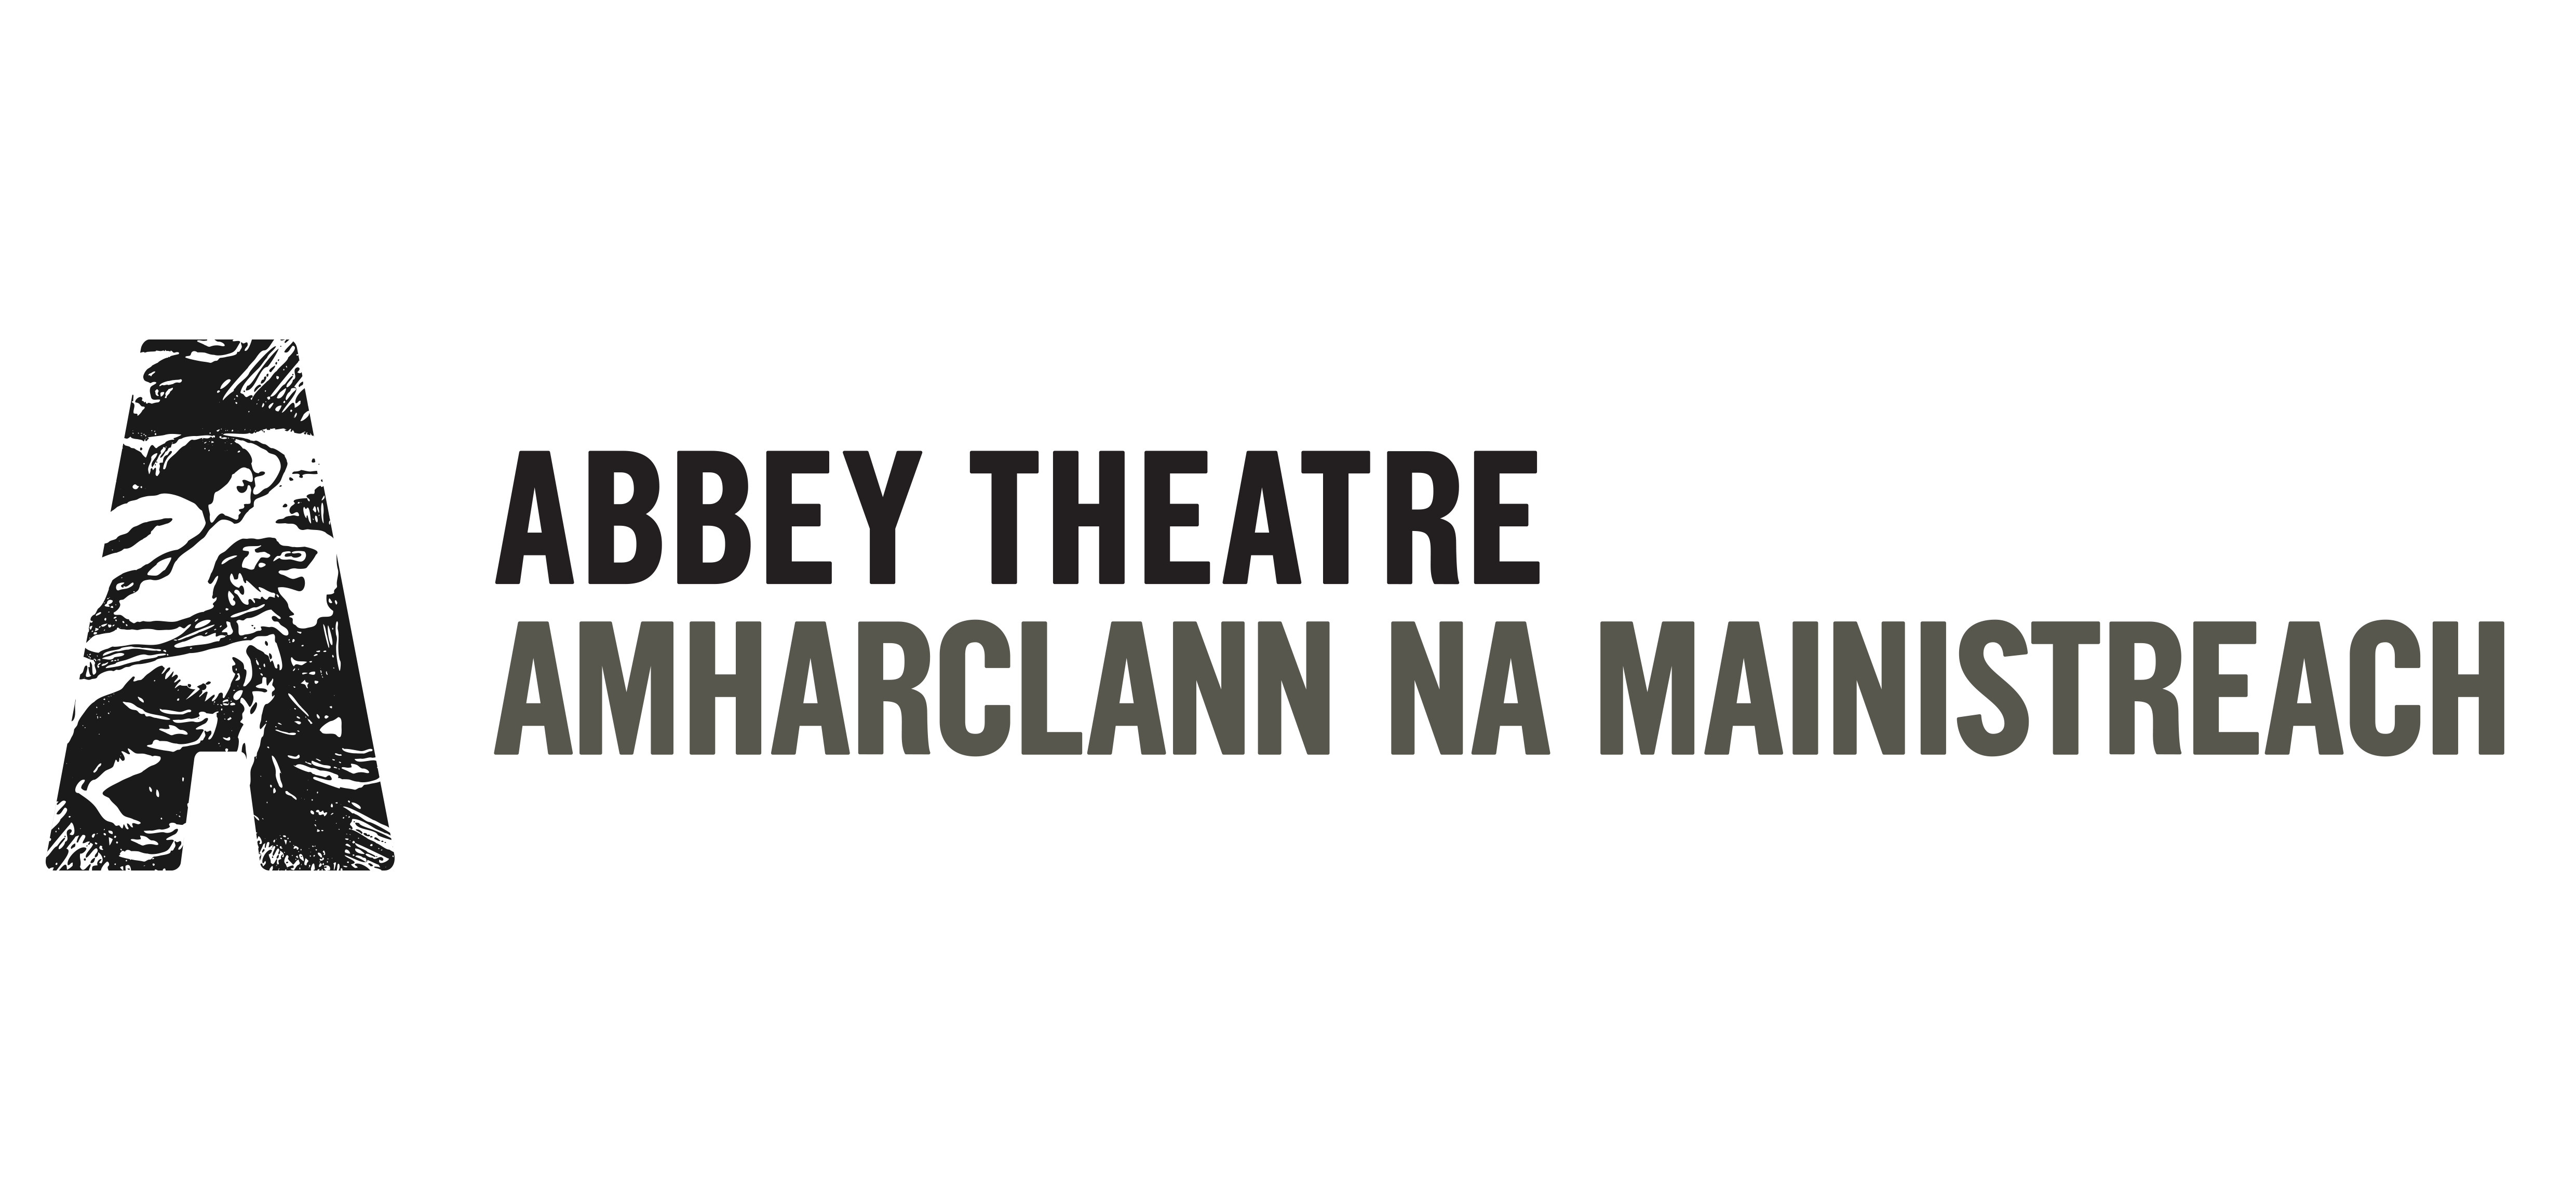 The Abbey Theatre logo